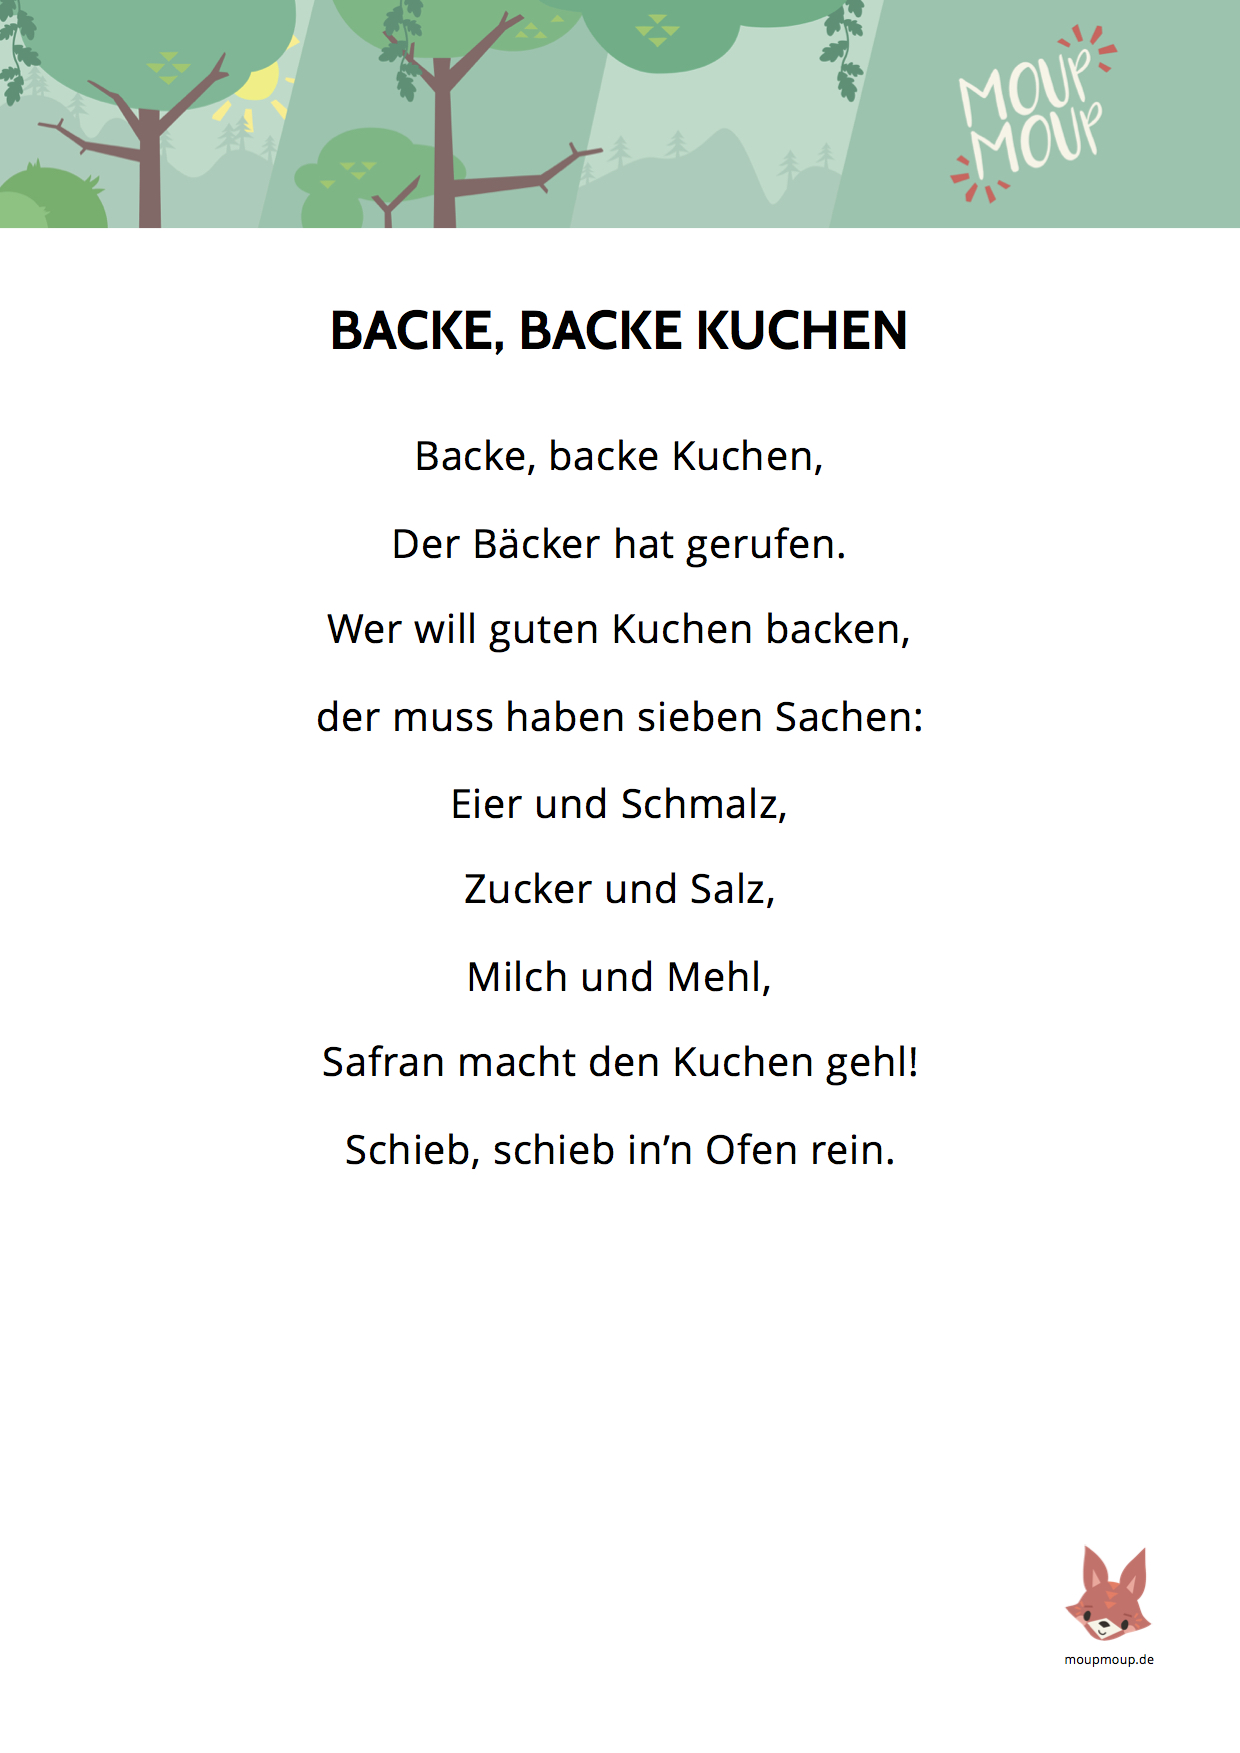 Ananiver Juster oase Backe, backe Kuchen - Lied & Liedtext | MoupMoup Kinderlieder